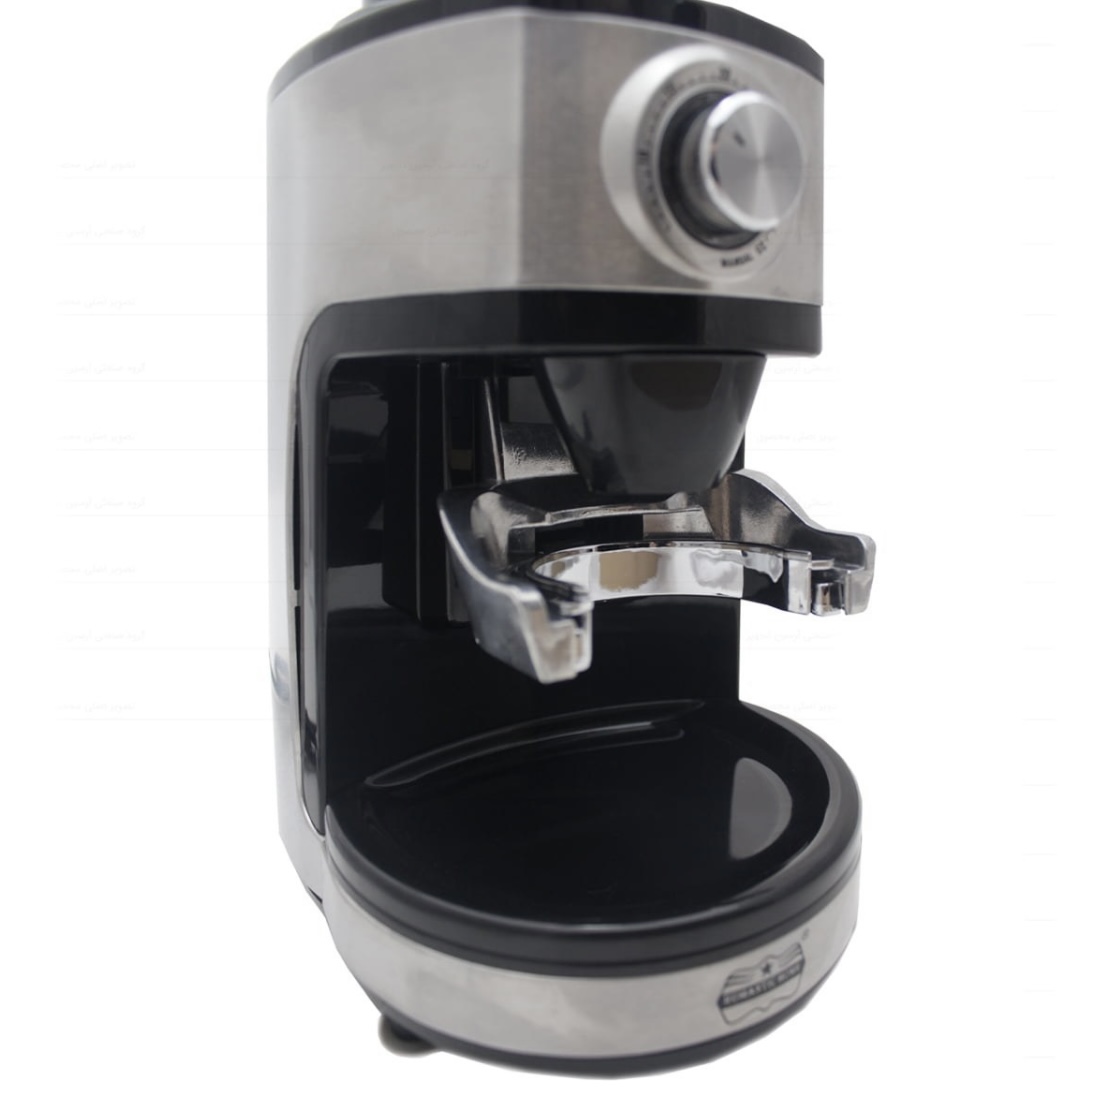 آسیاب قهوه zigma مدل WM-180 ا zigma coffee grinder model WM-180